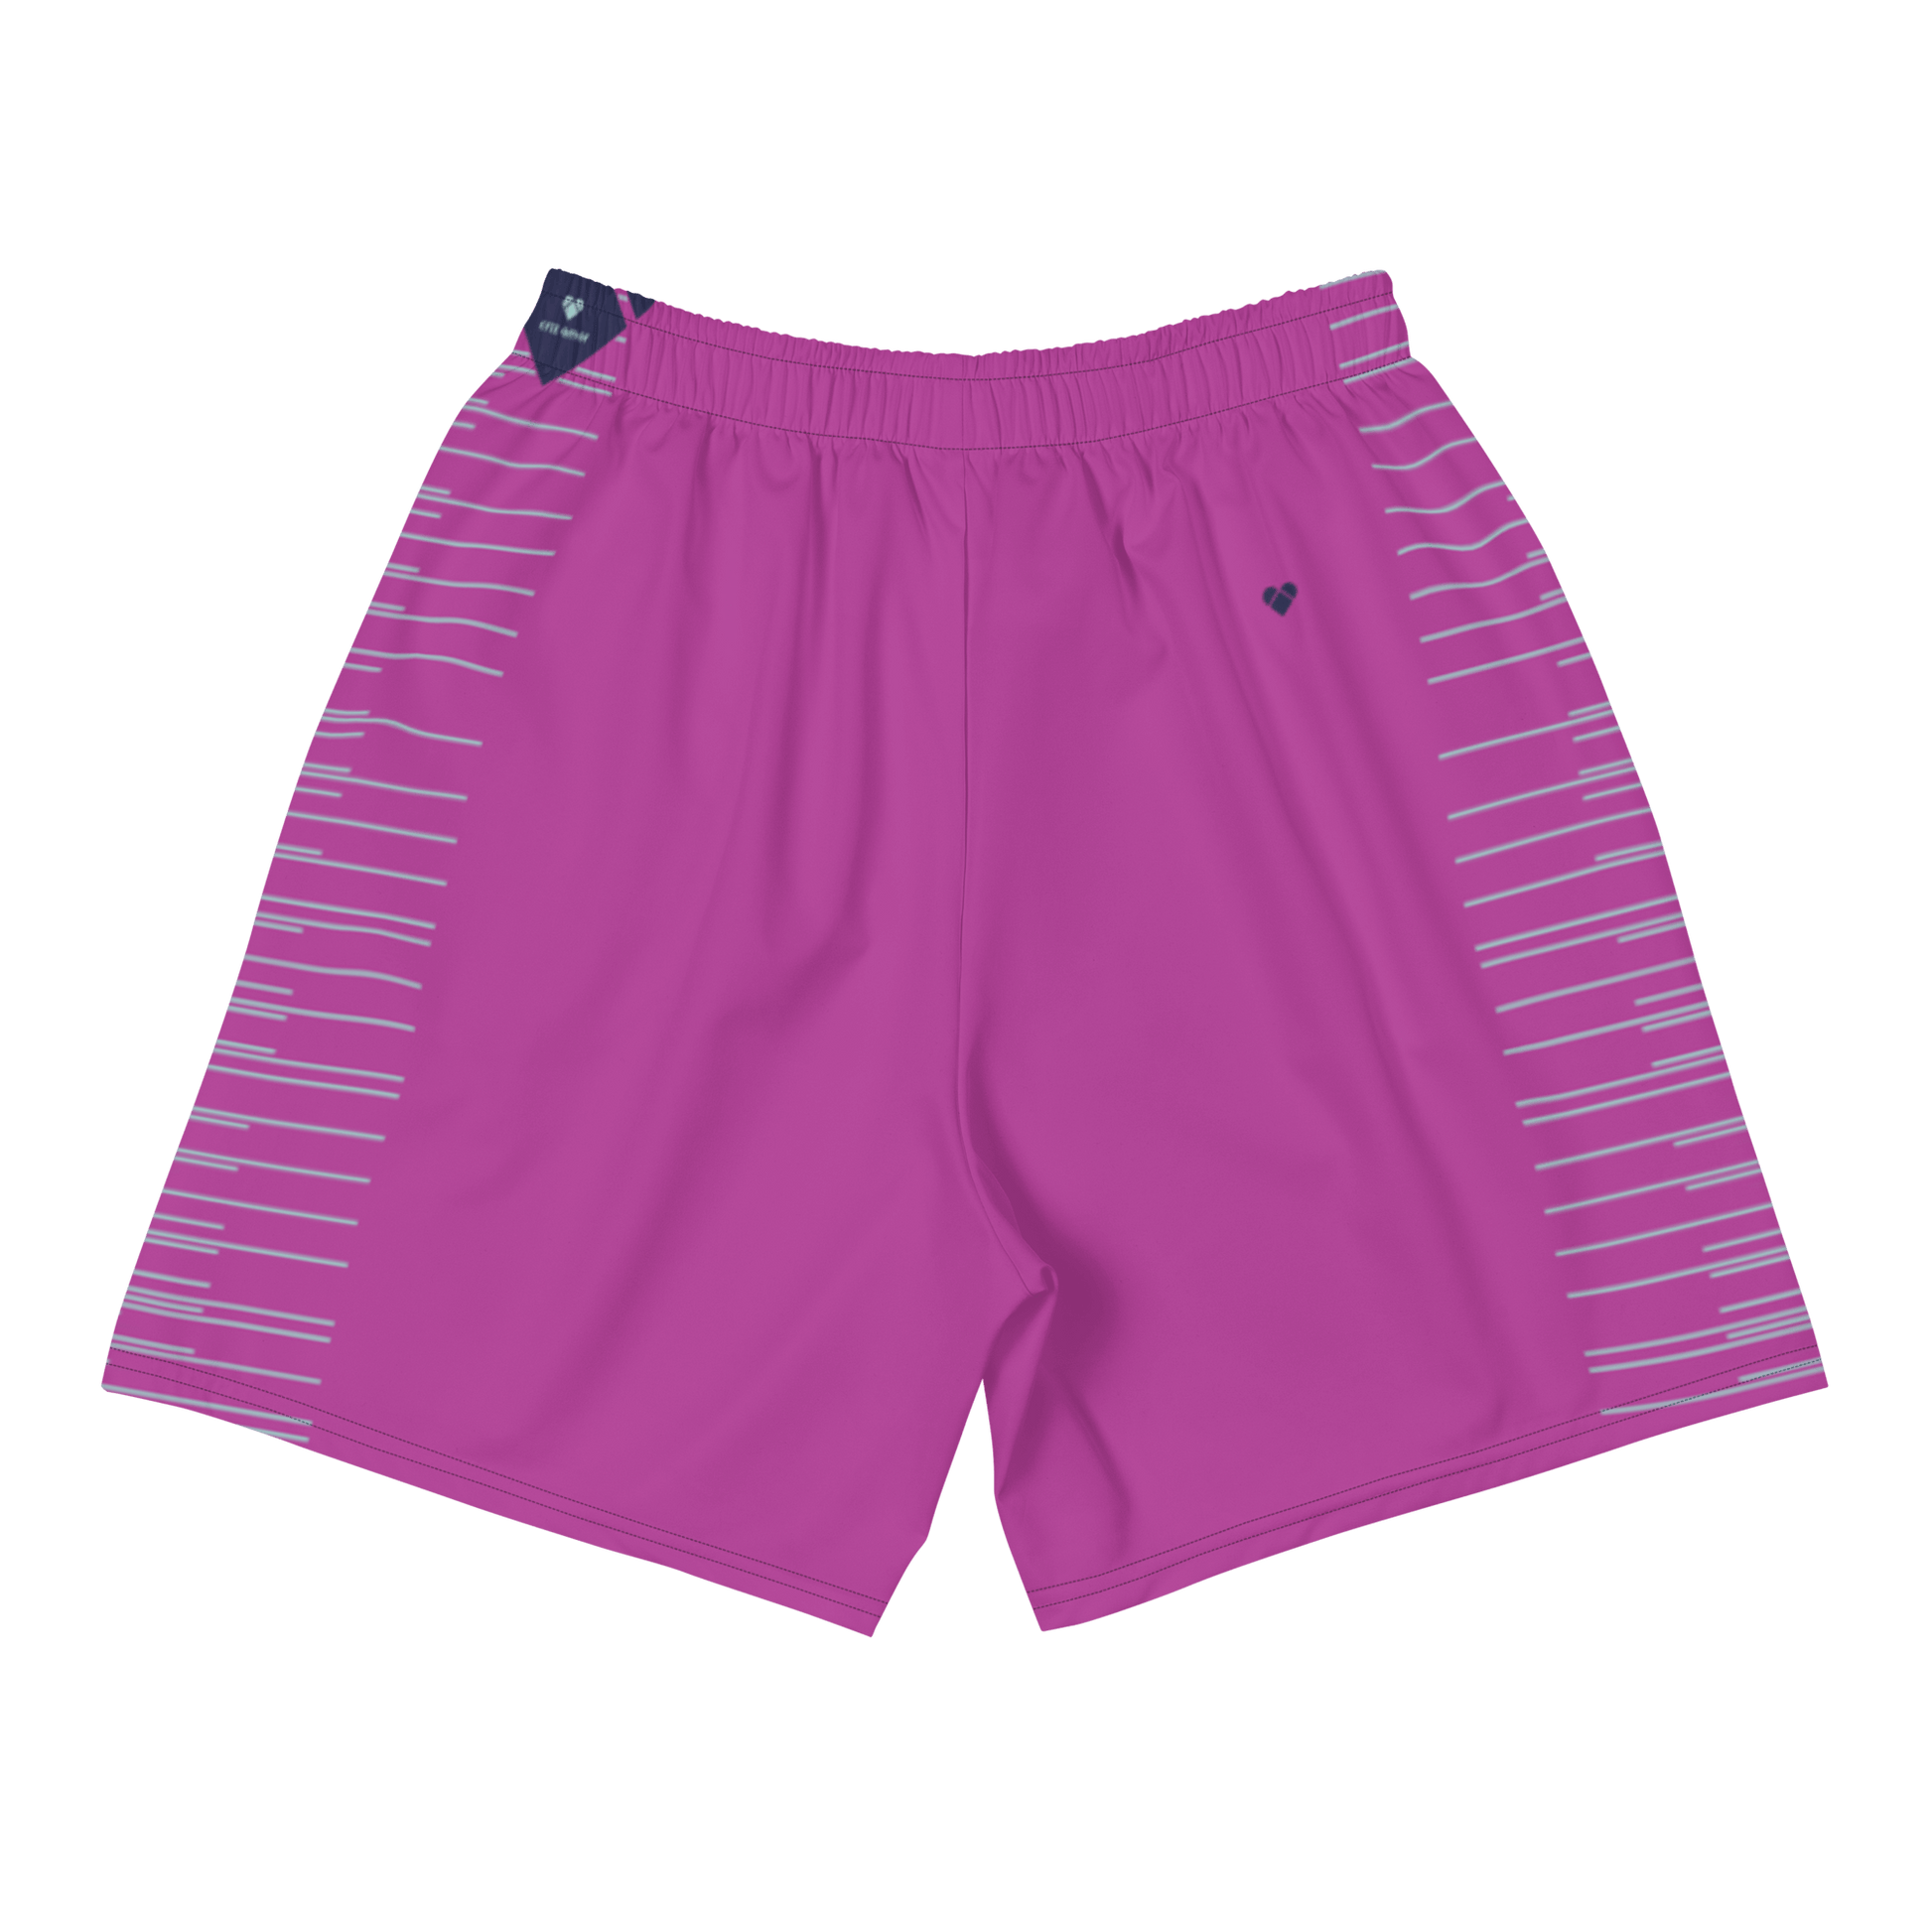 Men's fucsia shorts with mint gradient stripes